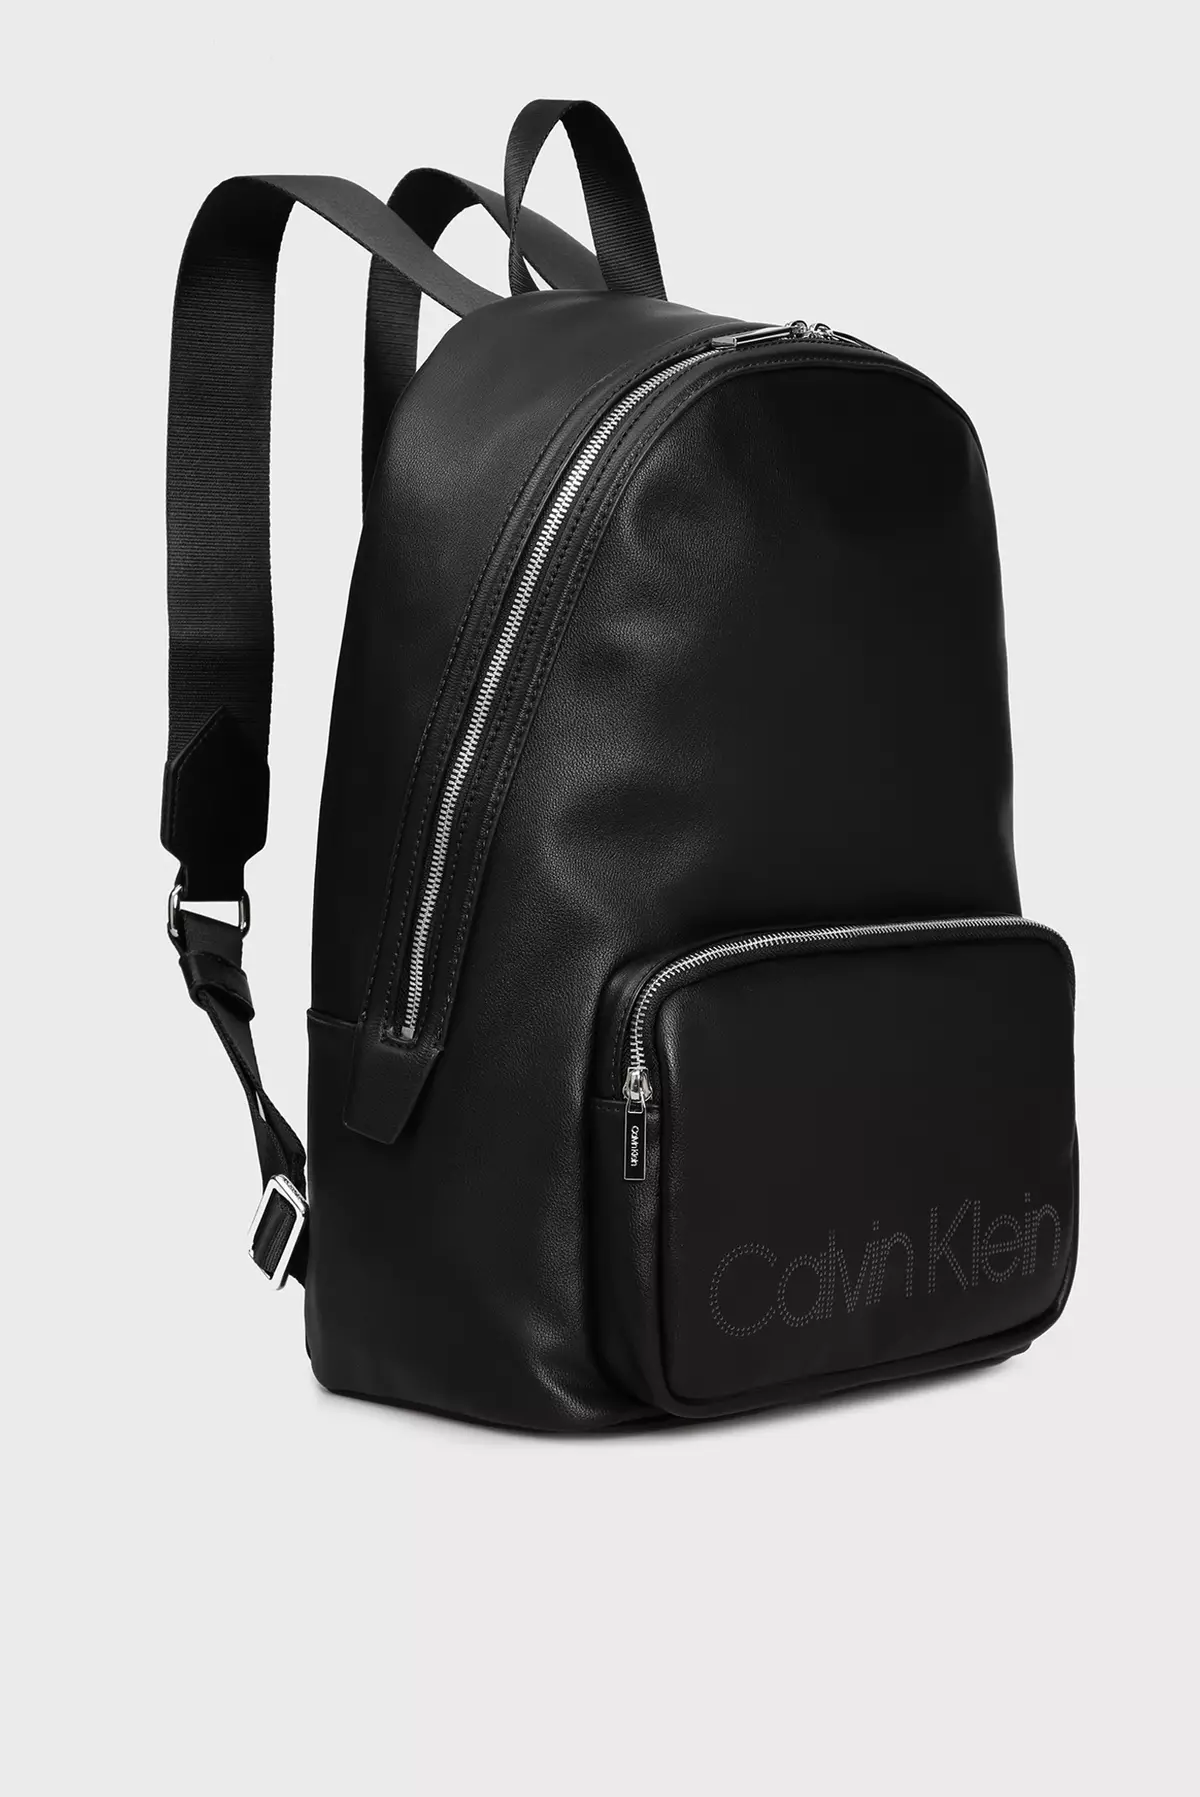 Backpacks Calvin Klein: femminili iswed u raġel, aħmar tal-ġilda, abjad, isfar b'monogramm u boroż oħra tal-kuluri - backpacks 15401_7